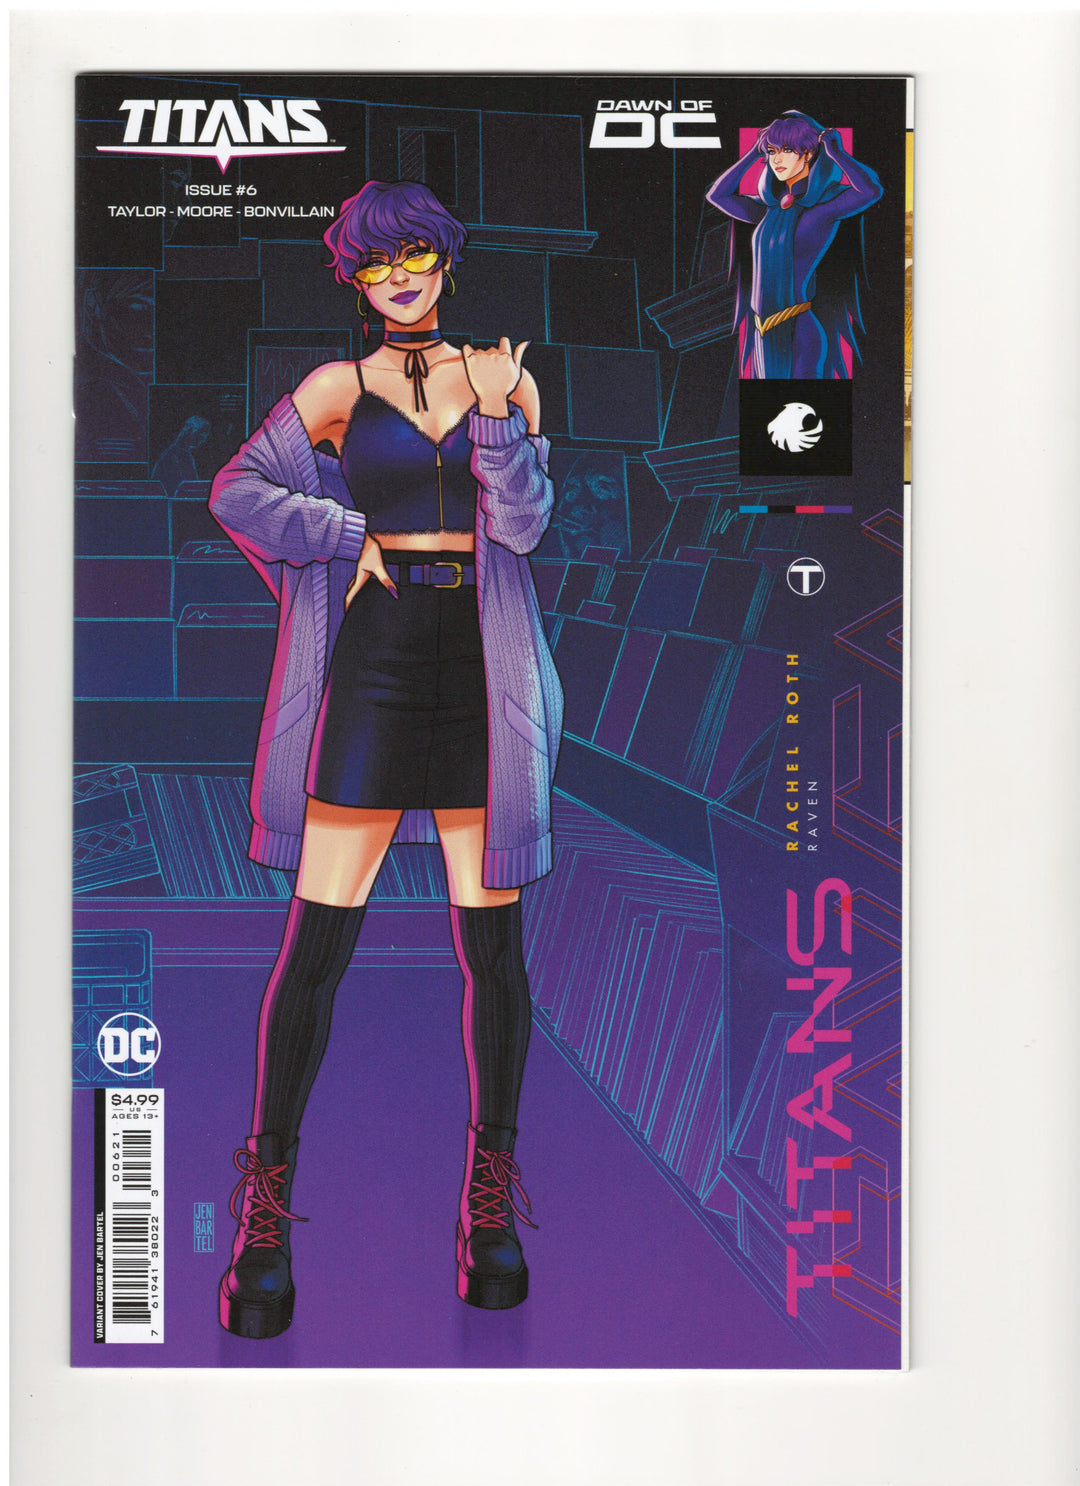 Lot of 7 Titans (2023) DC Comics #1-#7 All Jen Bartel Variant Covers Complete Set